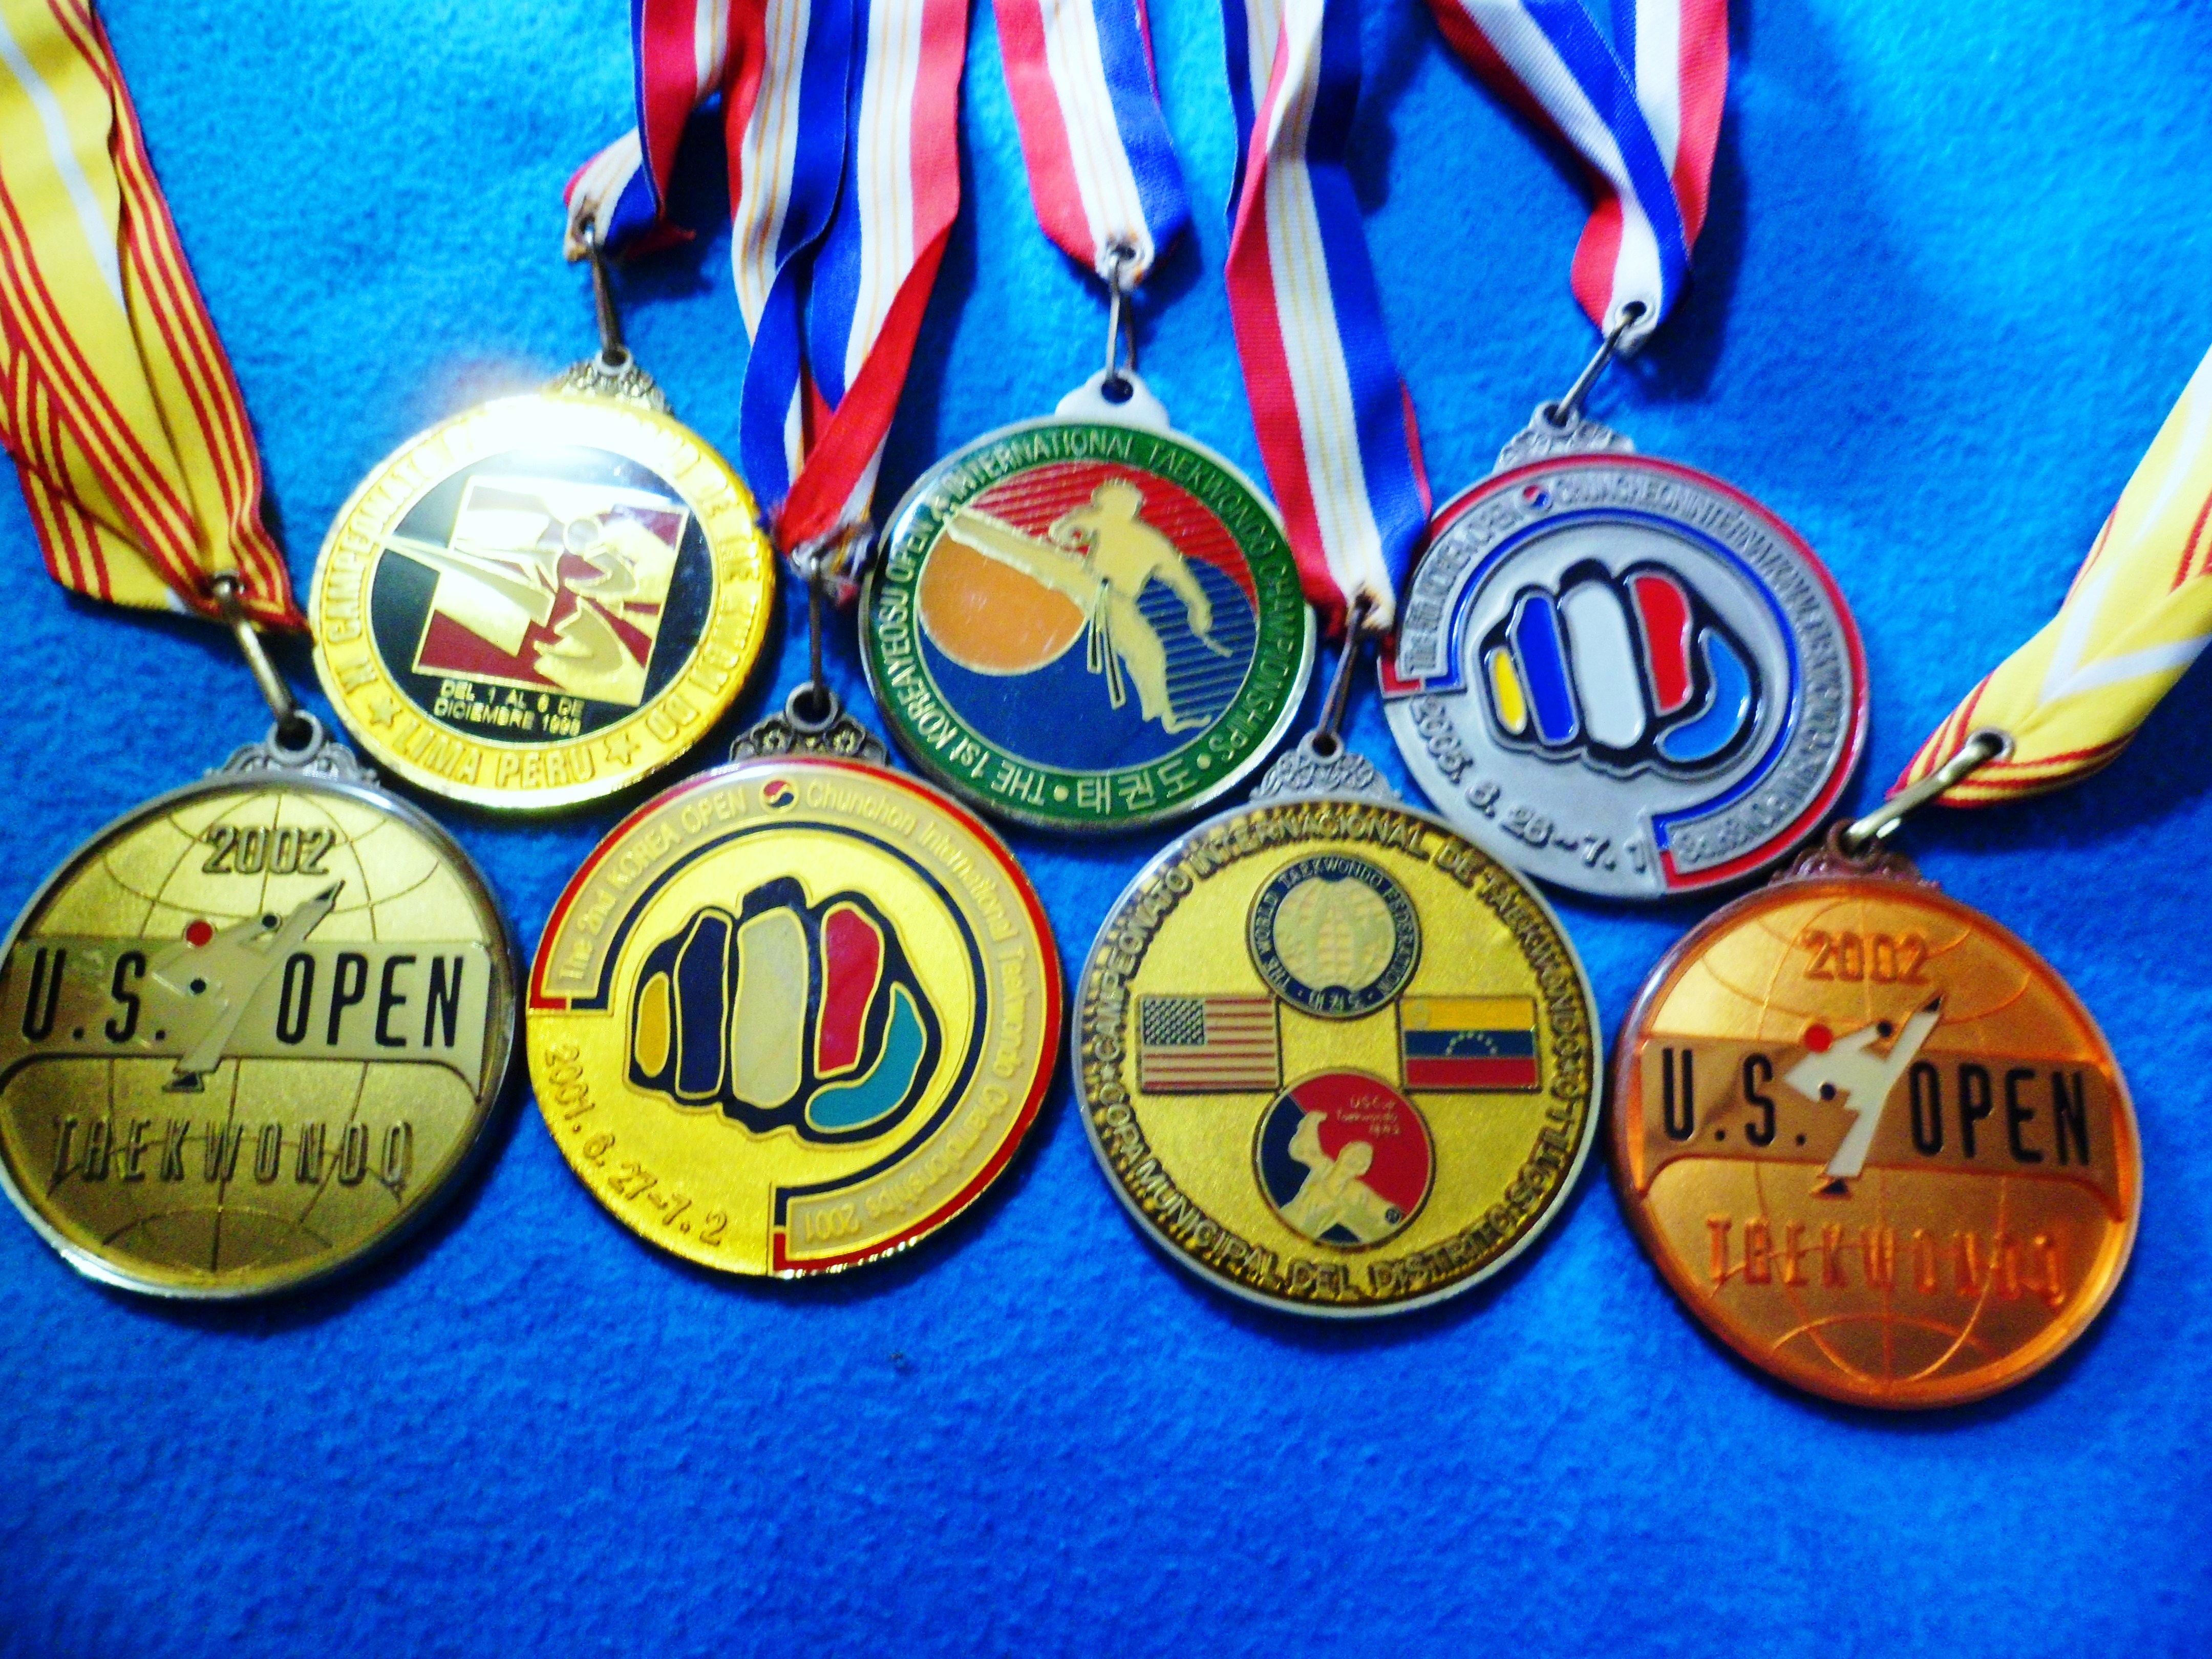 medalas internacionales en taekwondo .jpg